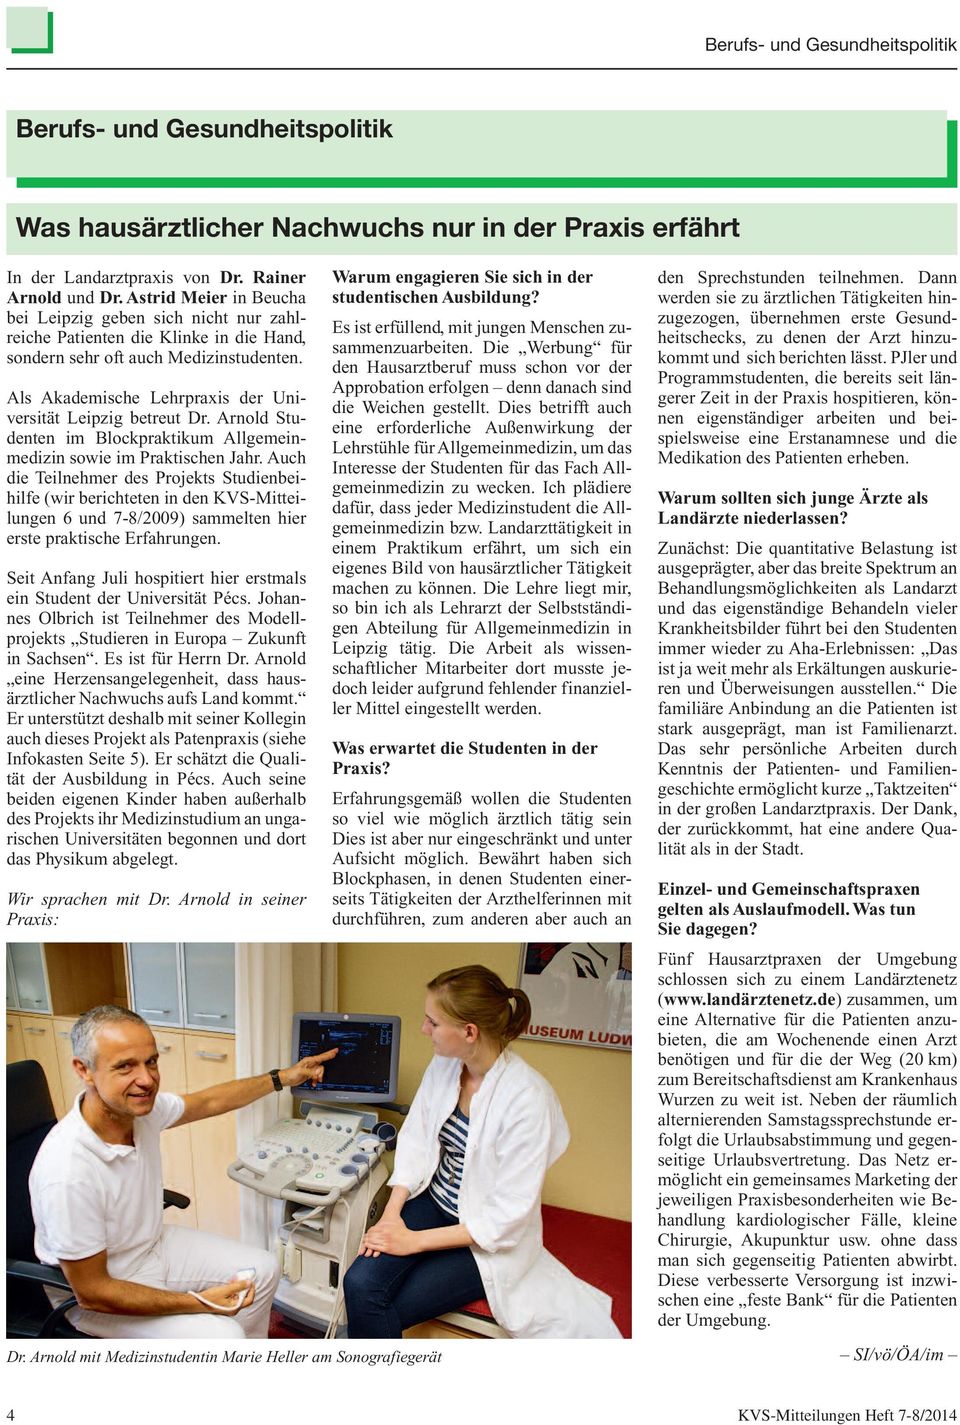 Als Akademische Lehrpraxis der Universität Leipzig betreut Dr. Arnold Studenten im Blockpraktikum Allgemeinmedizin sowie im Praktischen Jahr.